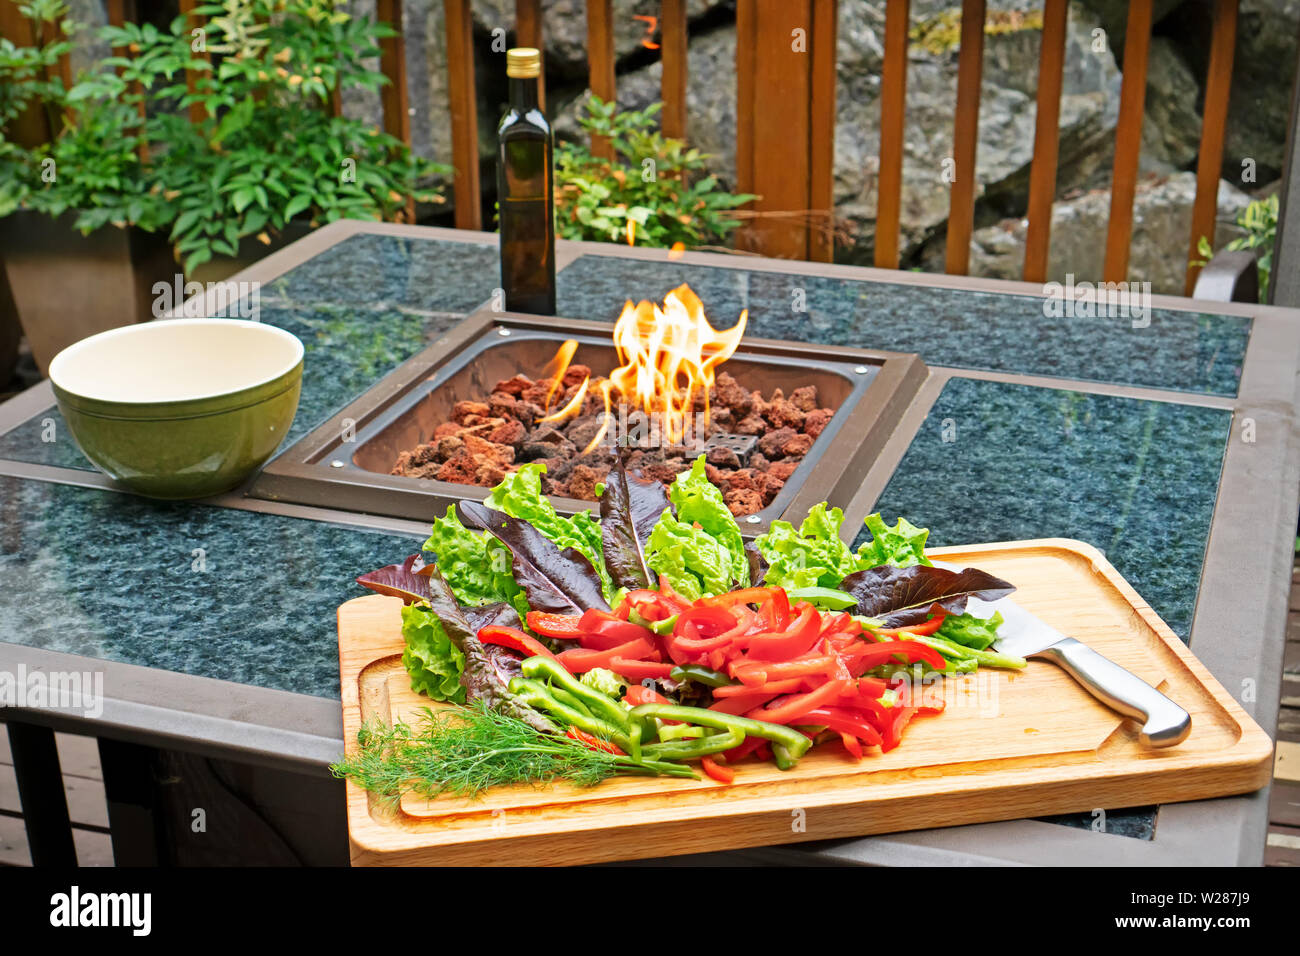 Insalata di fare fuori: peperoni e lattuga sul bordo di taglio sono pronti per essere trasformato in un insalata. Il fuoco sta bruciando per scaldare una fredda giornata. Foto Stock